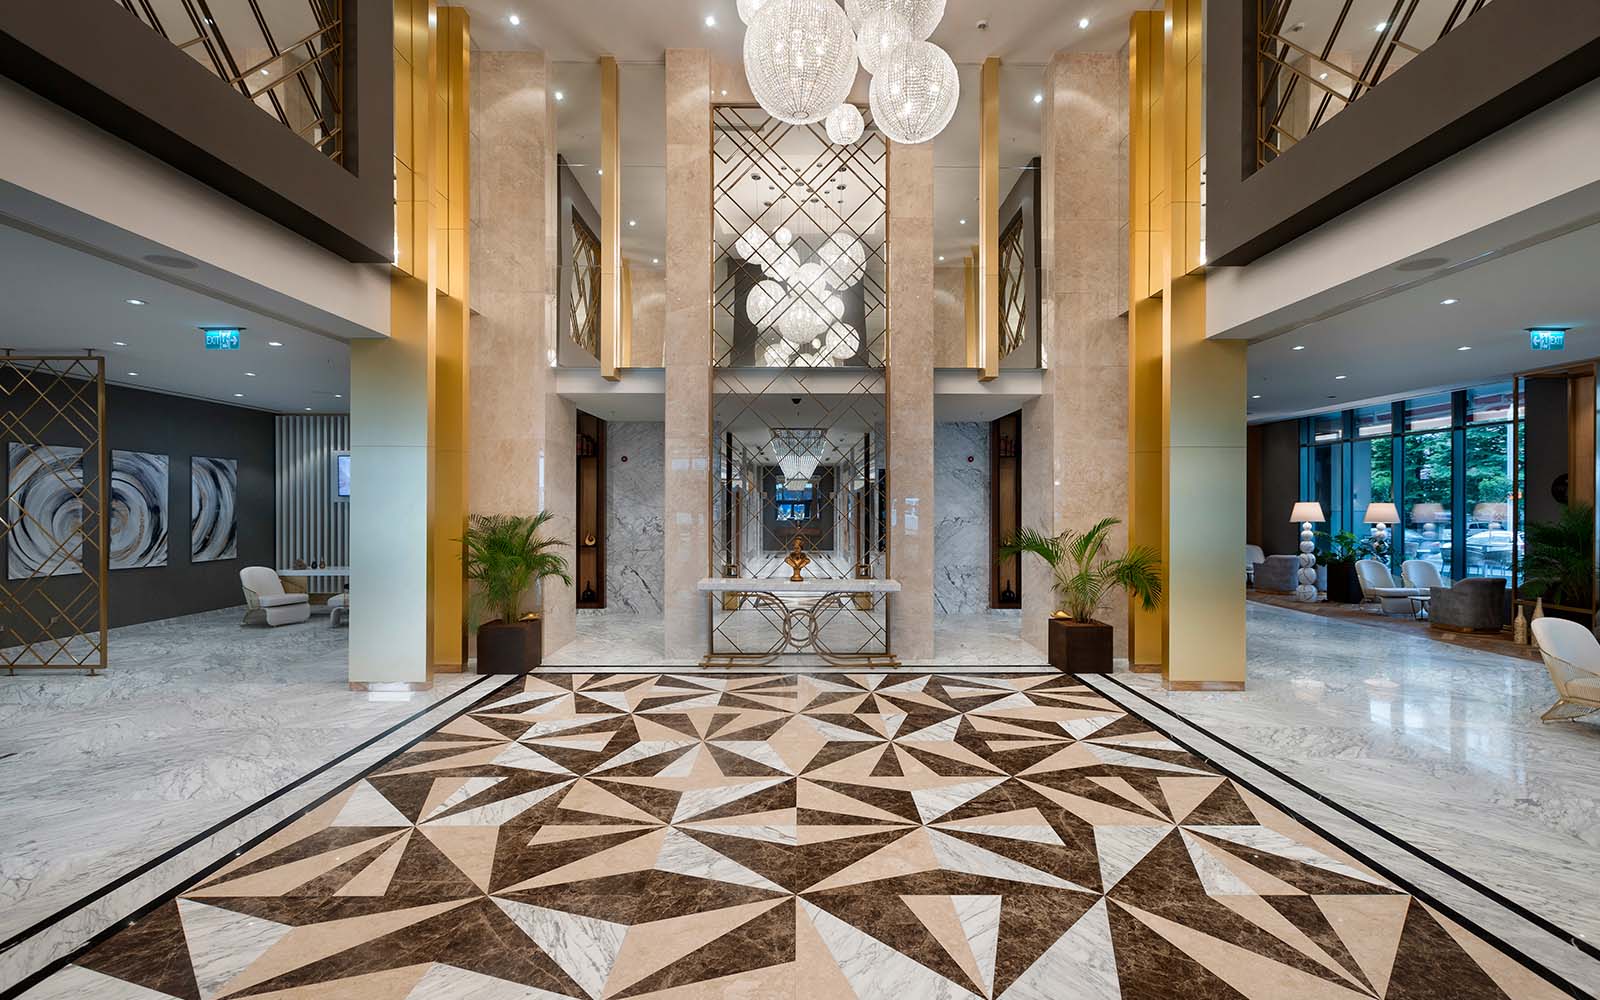 Limak Skopje Luxury Hotel , Lobby